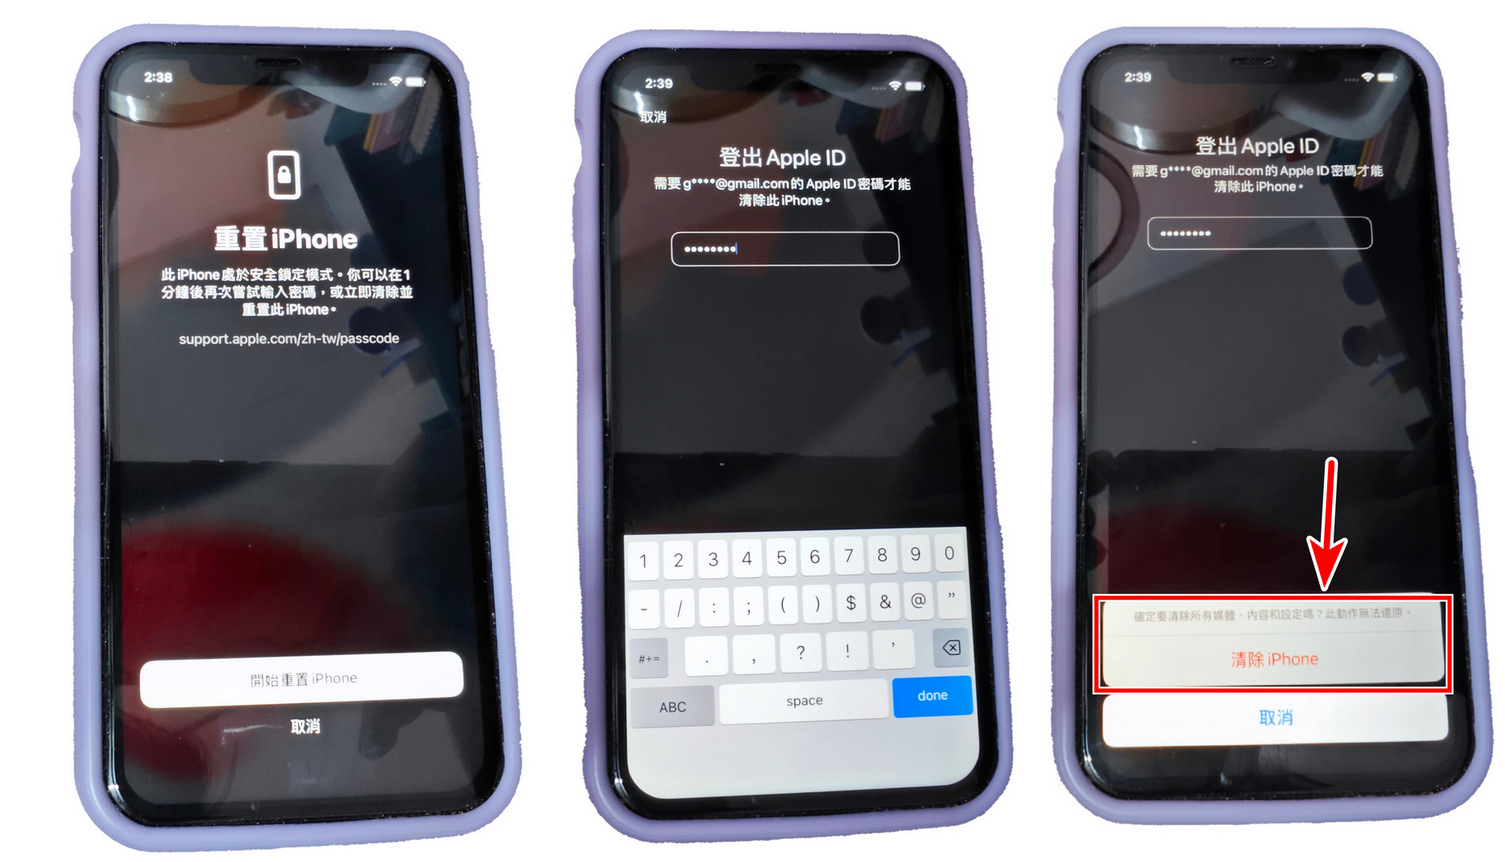 iphone忘記螢幕密碼怎麼辦，3種免電腦解鎖方法! - iPhone忘記密碼 iPhone - 敗家達人推薦